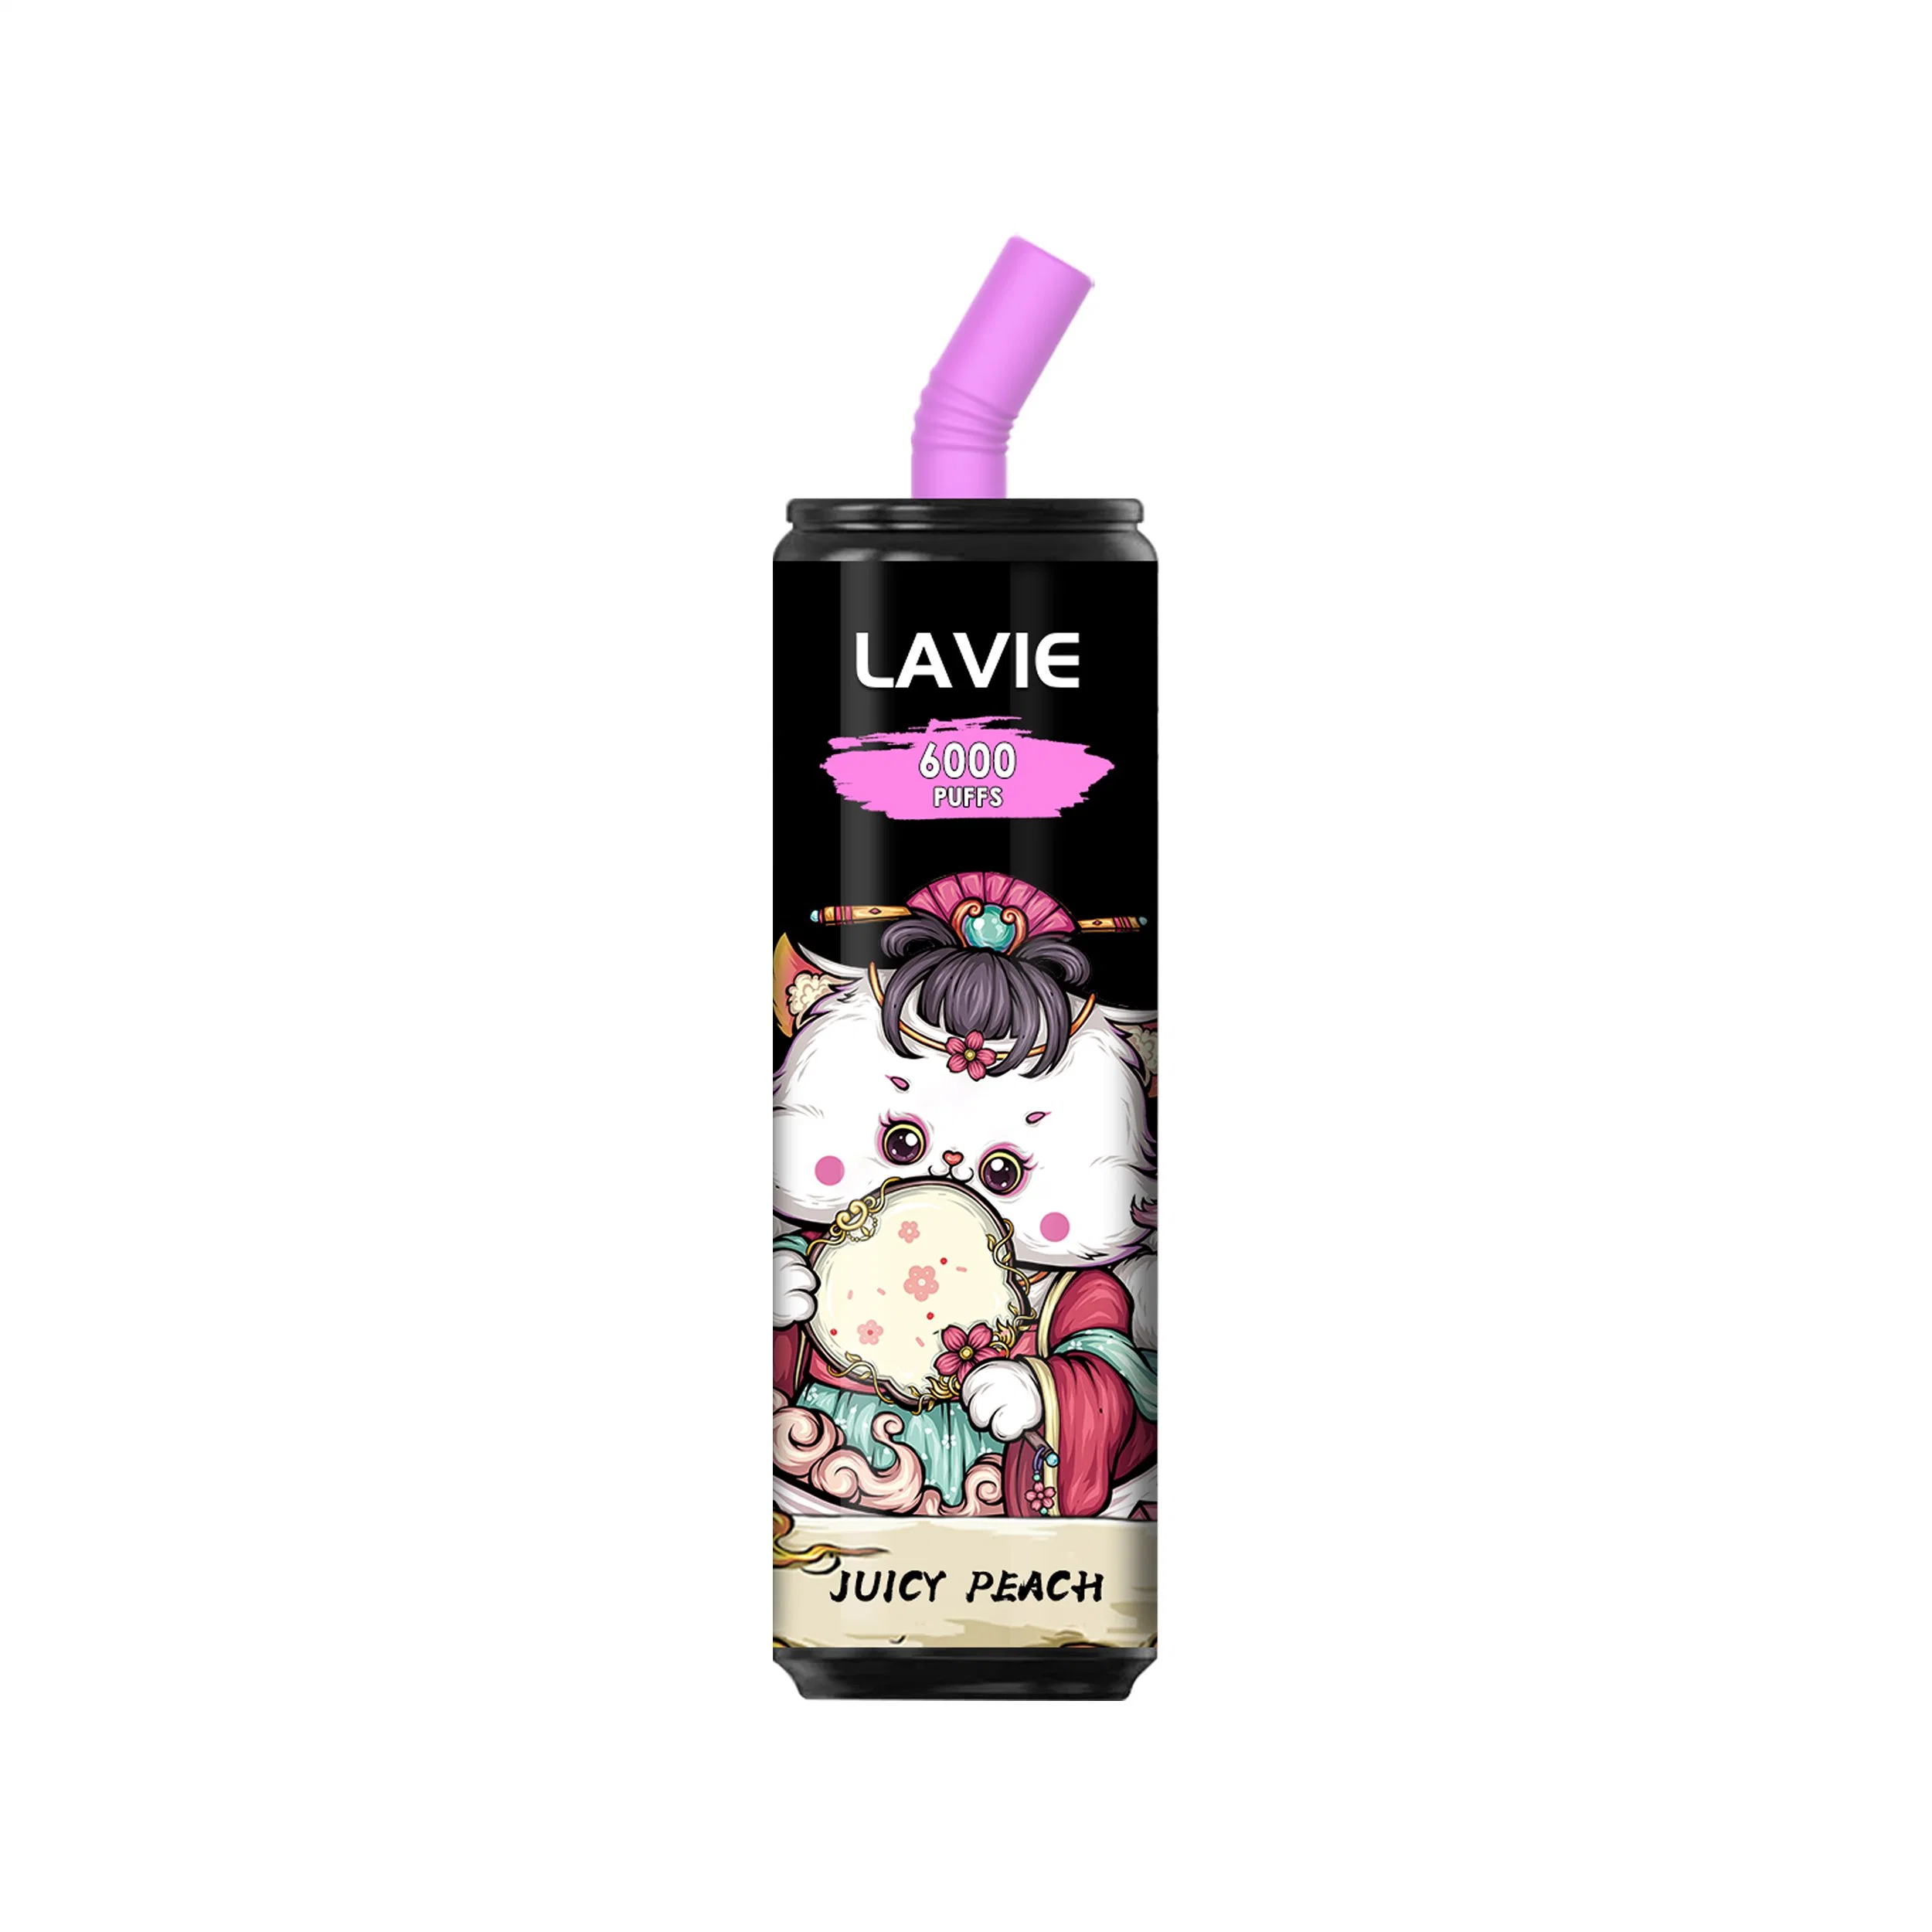 Lavie 6000 Puffs Vapes Disposable Vape Youto Vape Nano Stick Vape Cartridge Packaging Pod Vape Squid Game Electric Vape Pen